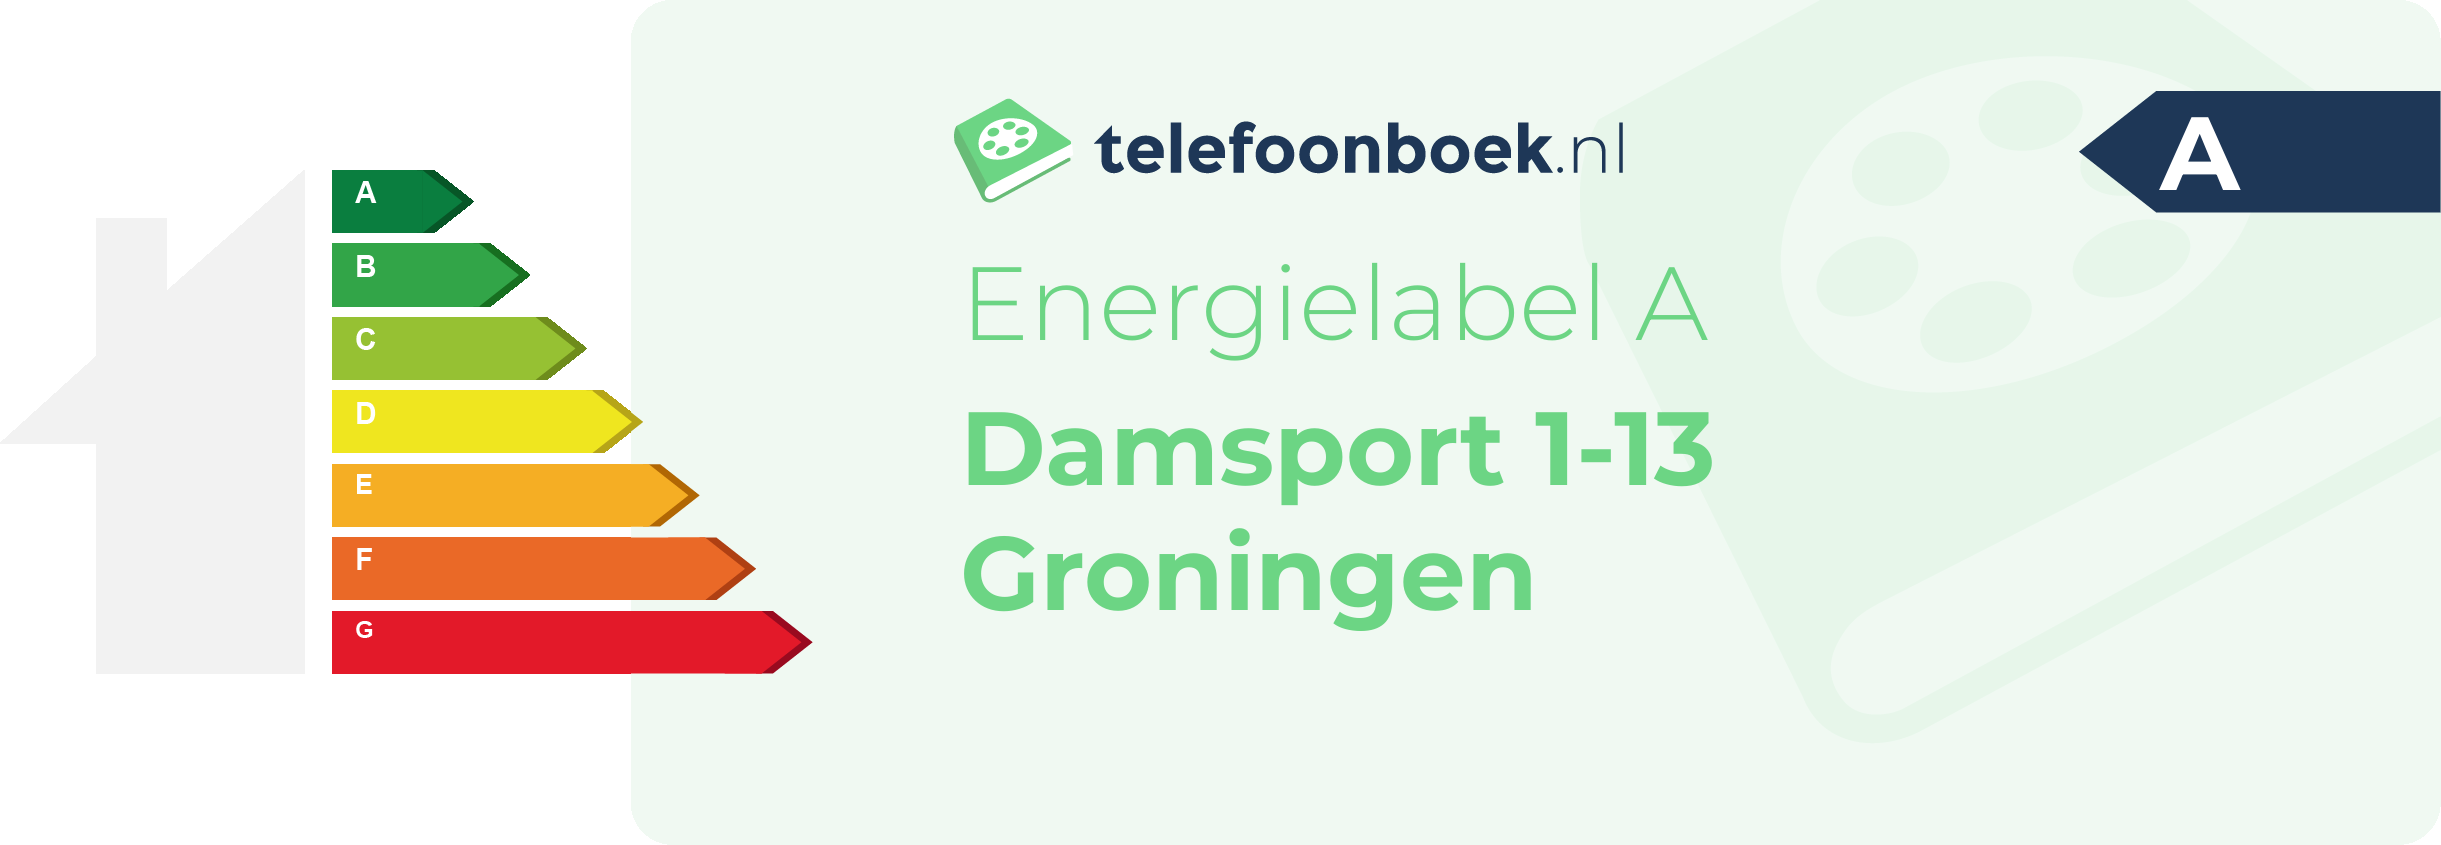 Energielabel Damsport 1-13 Groningen